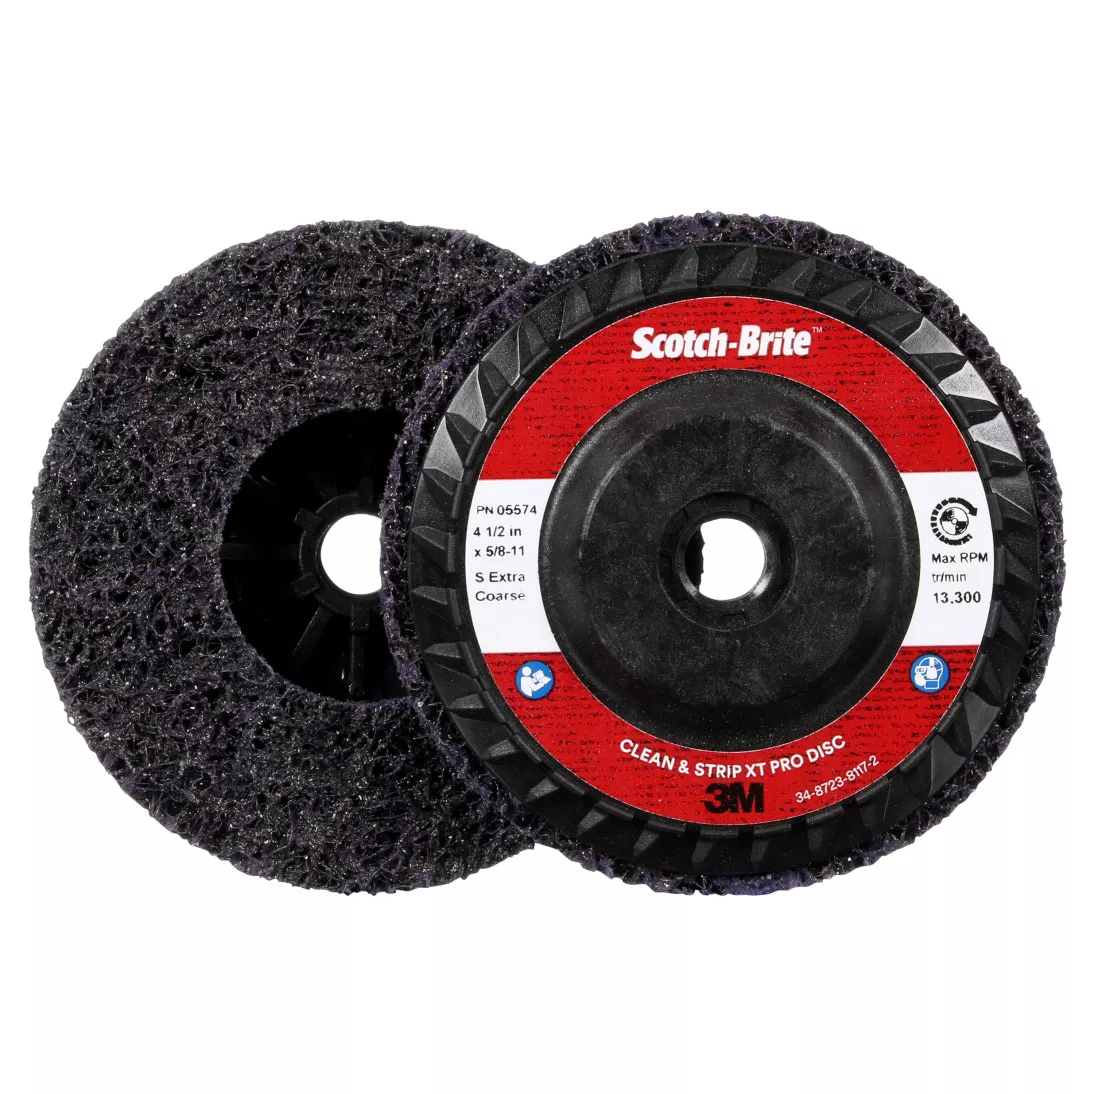 Scotch-Brite™ Clean and Strip XT Pro Disc, XO-DC, SiC Extra Coarse,
Purple, 4-1/2 in x 5/8